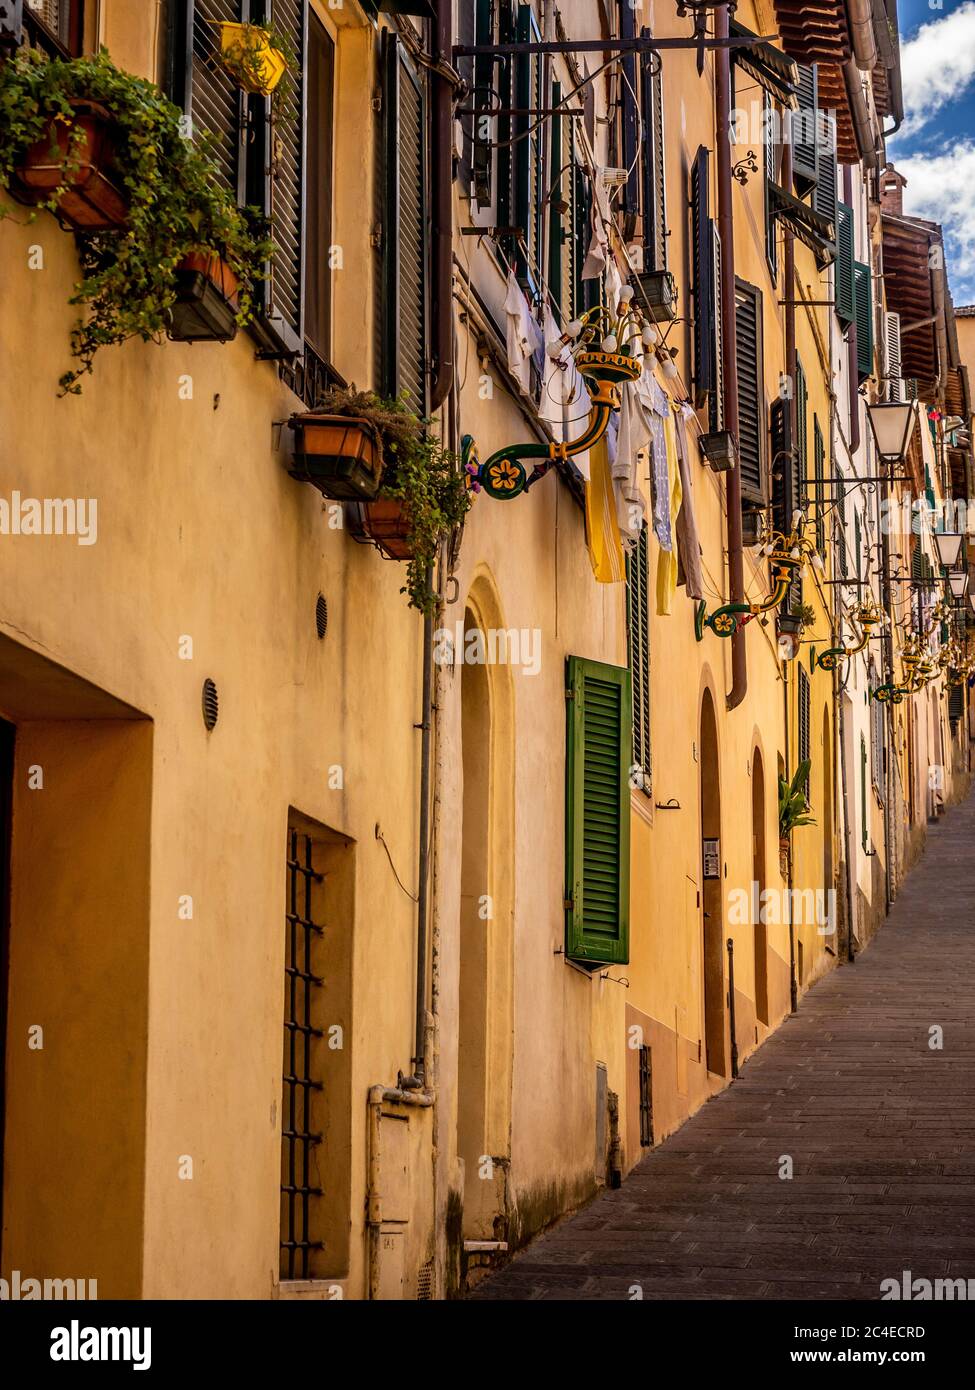 Une étroite rue escarpée longeant une rangée de maisons avec des volets en bois, Sienne. Italie. Banque D'Images